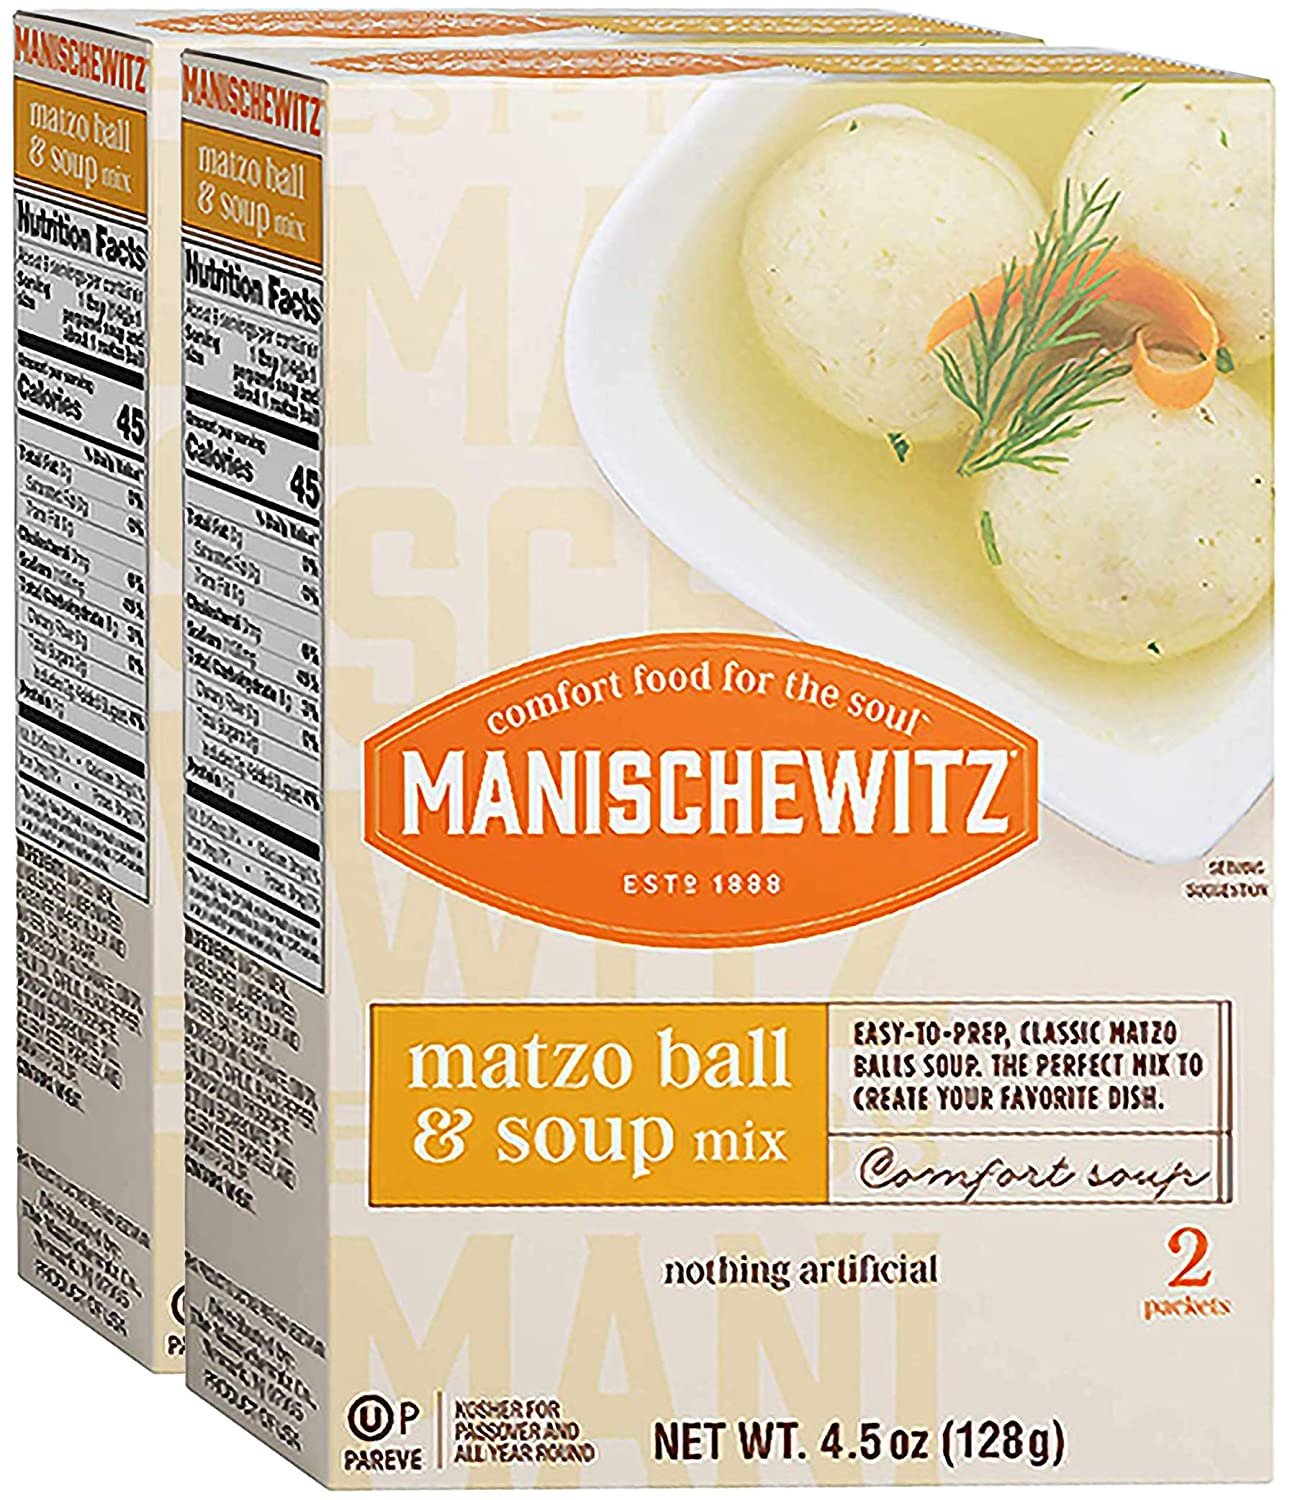 2 Pack Manischewitz Mix Matzo Ball Soup